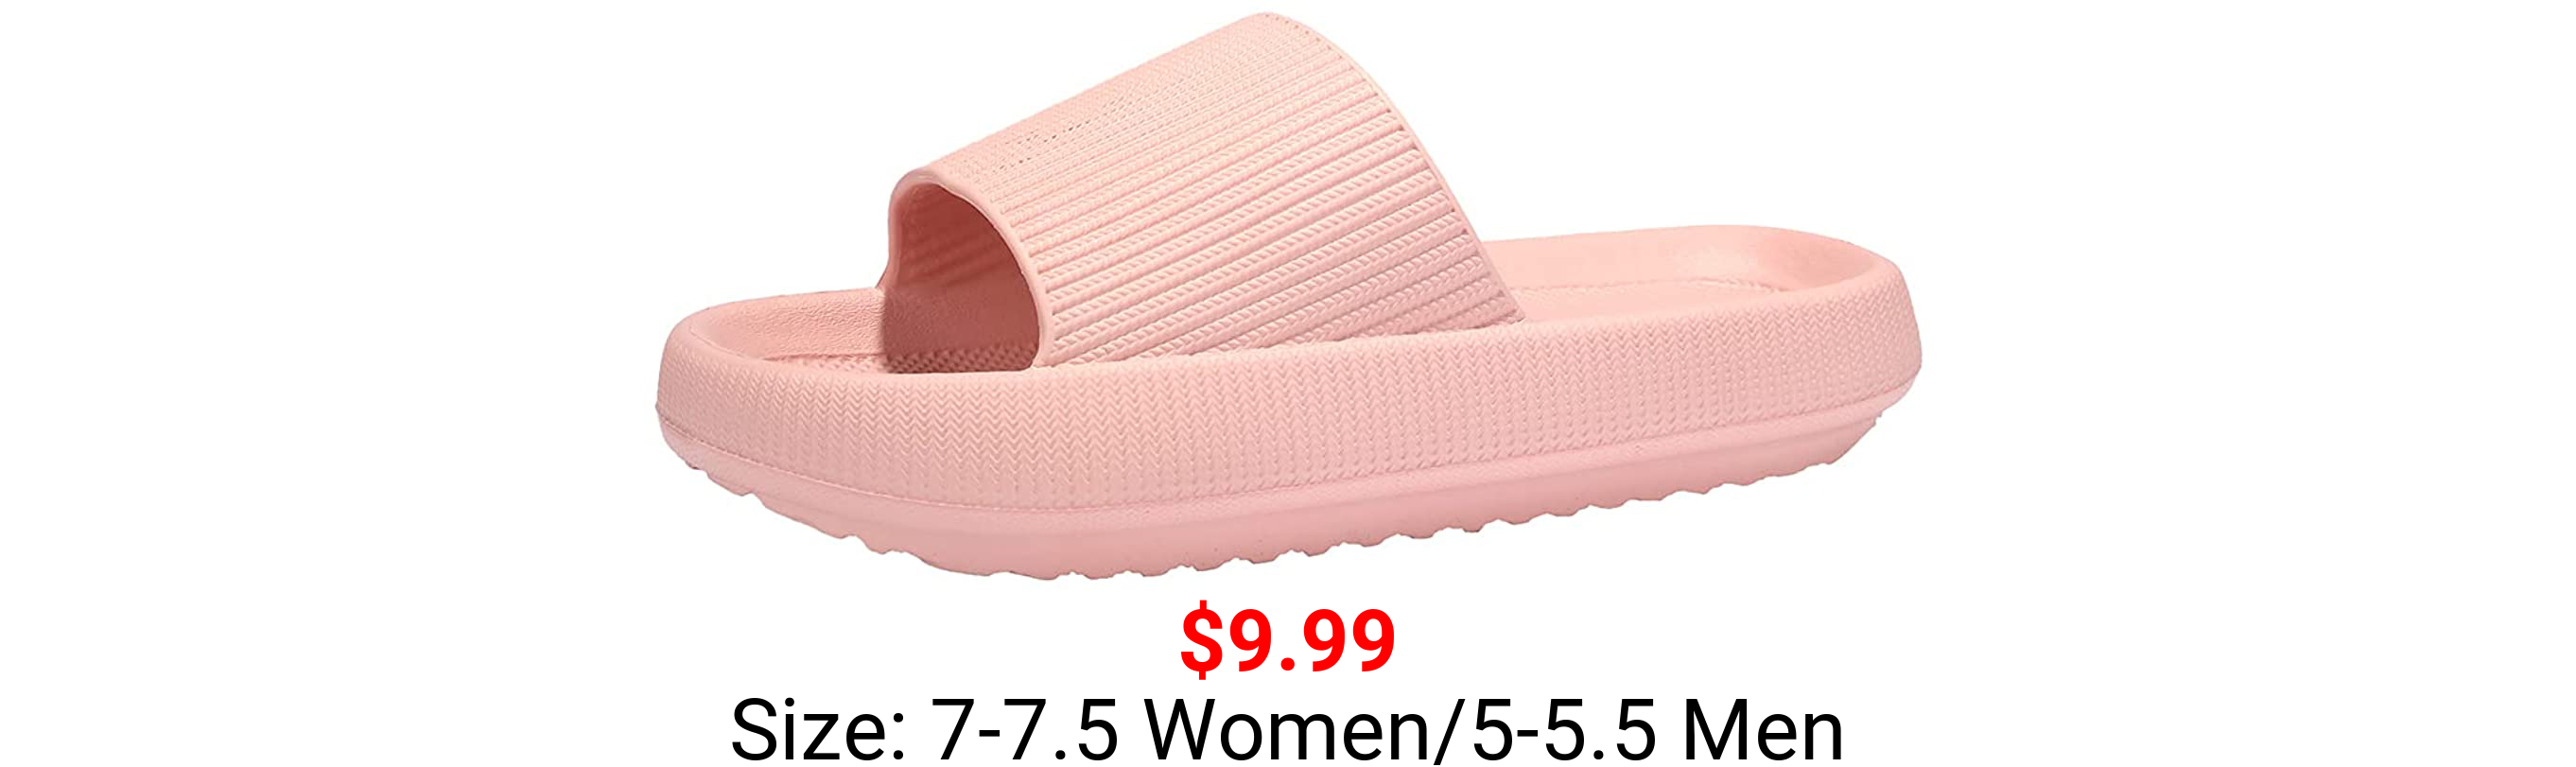 Deevike Slippers for Women and Men Pillow Slides Women Shower Bathroom Sandals Soft Non Slip House Quick Drying Slides